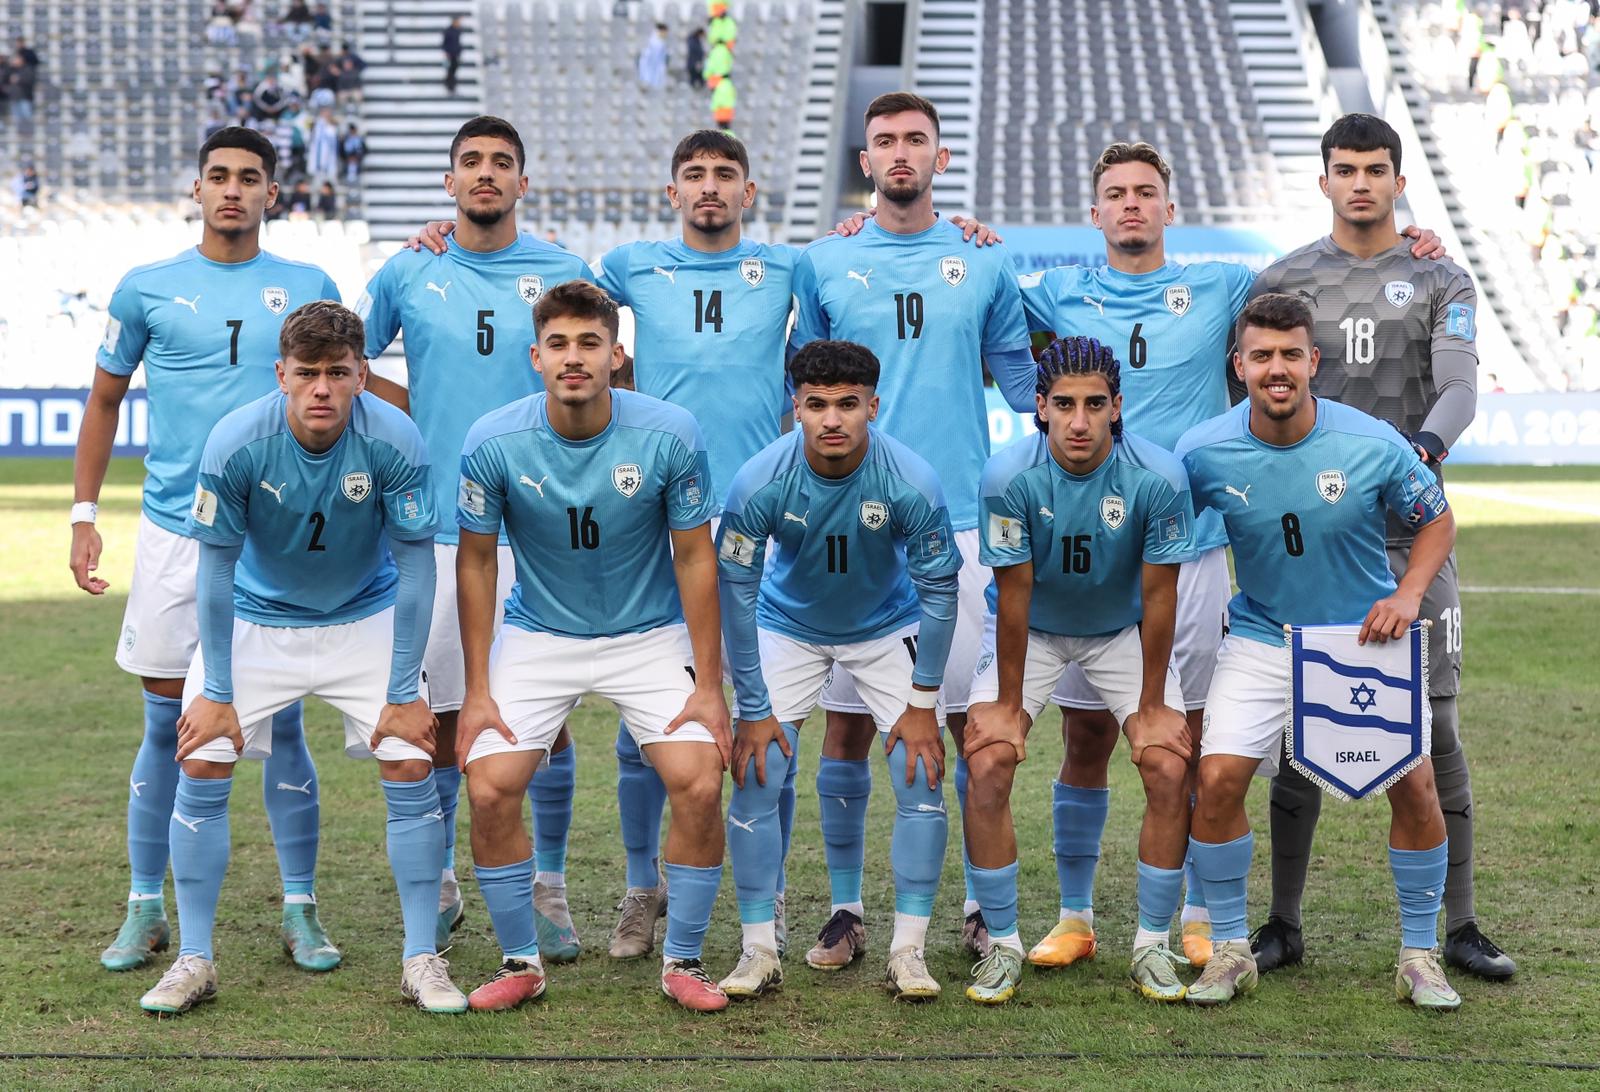 נבחרת ישראל עד גיל 20 מול קוריאה הדרומית במשחק על המקום השלישי במונדיאליטו (צילום: אסי קיפר ההתאחדות לכדורגל)